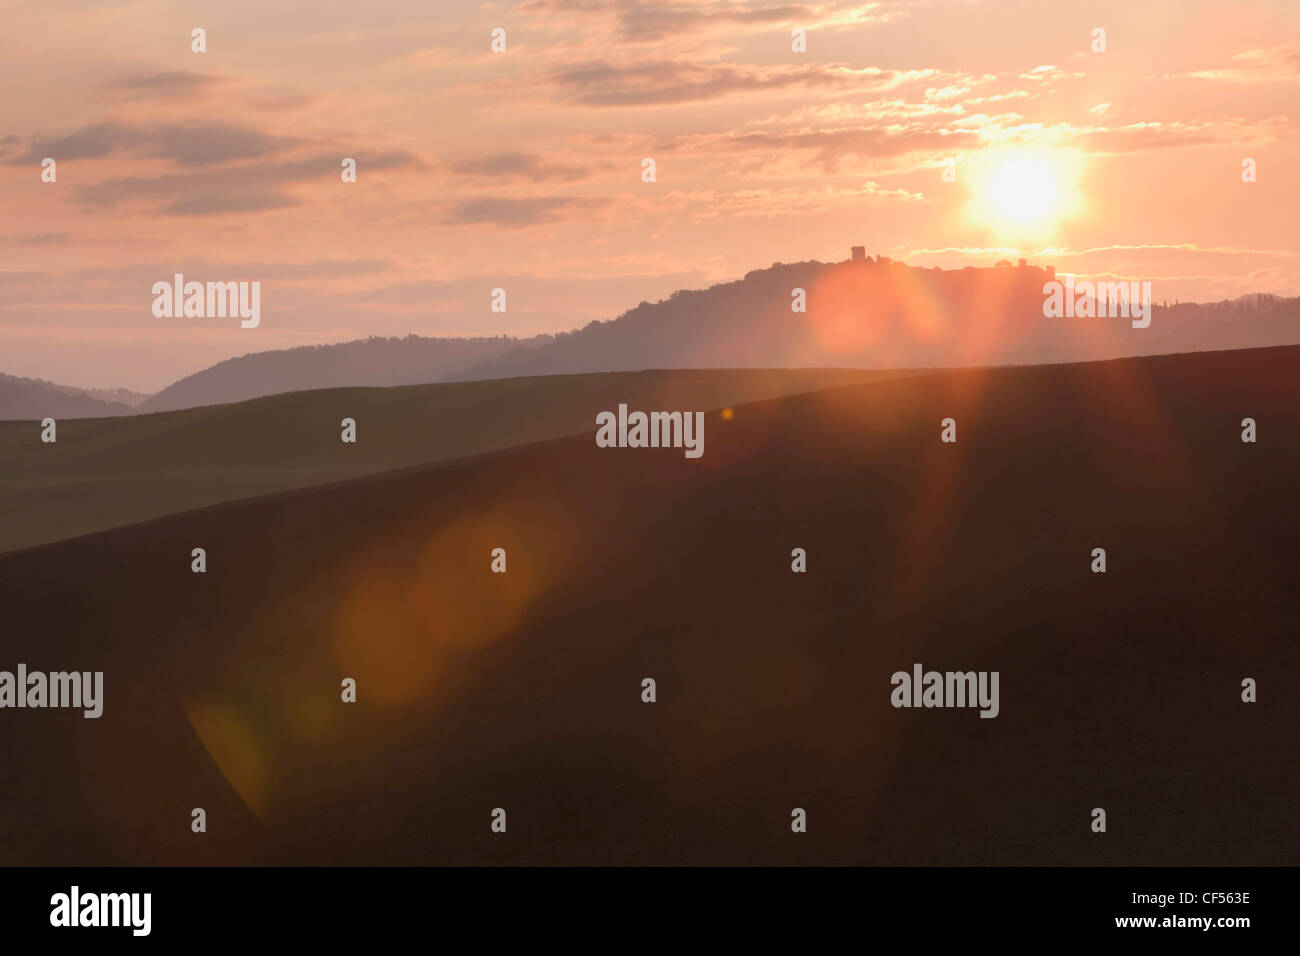 Italie, Toscane, vue du paysage pendant le coucher du soleil Banque D'Images